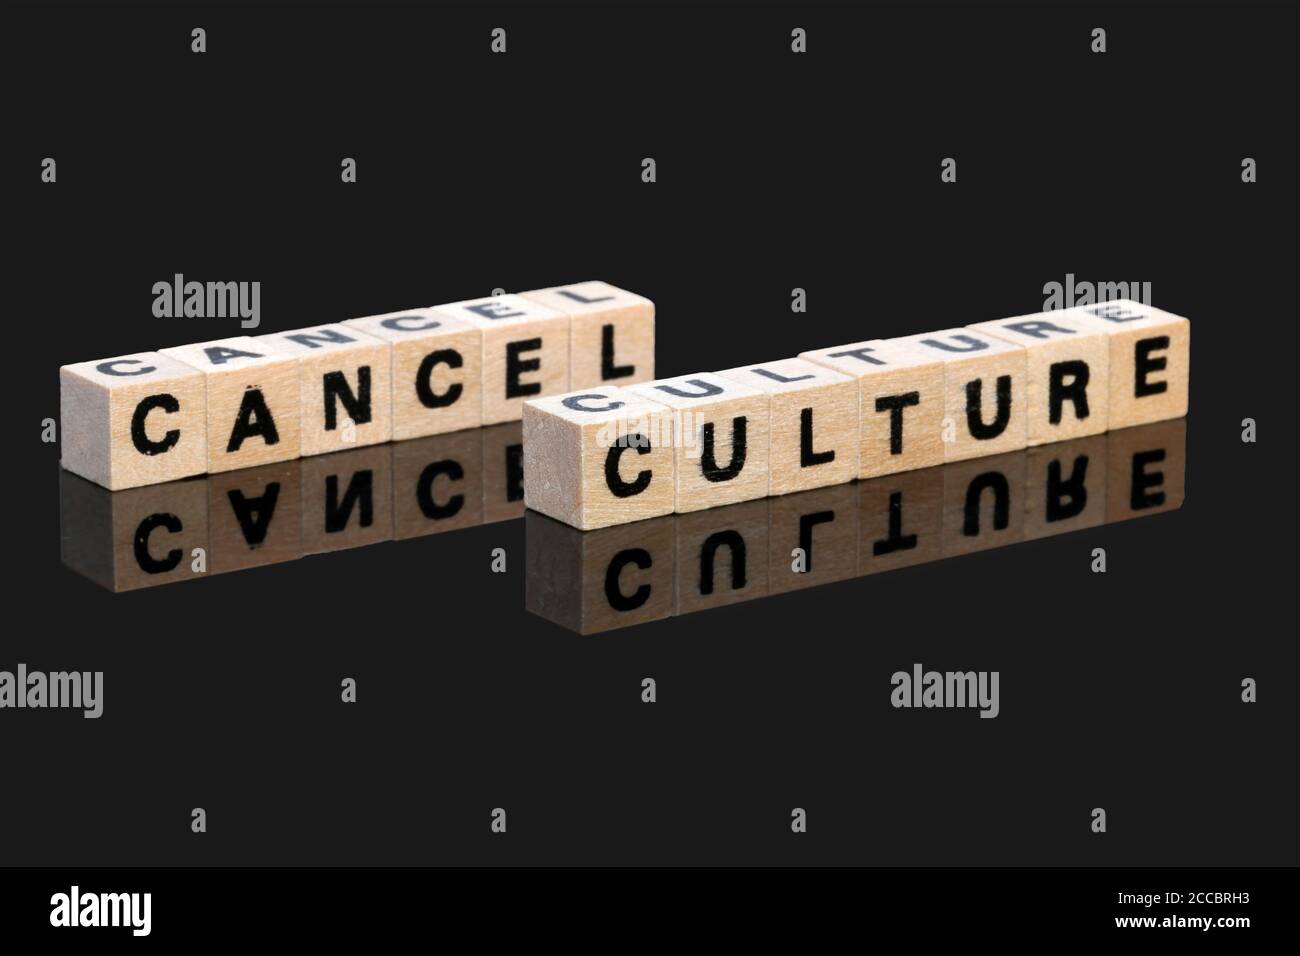 Image symbolique pour le débat sur la soi-disant 'Annuler la culture'. Les cubes de lettres affichent les mots Annuler la culture sur fond noir Banque D'Images